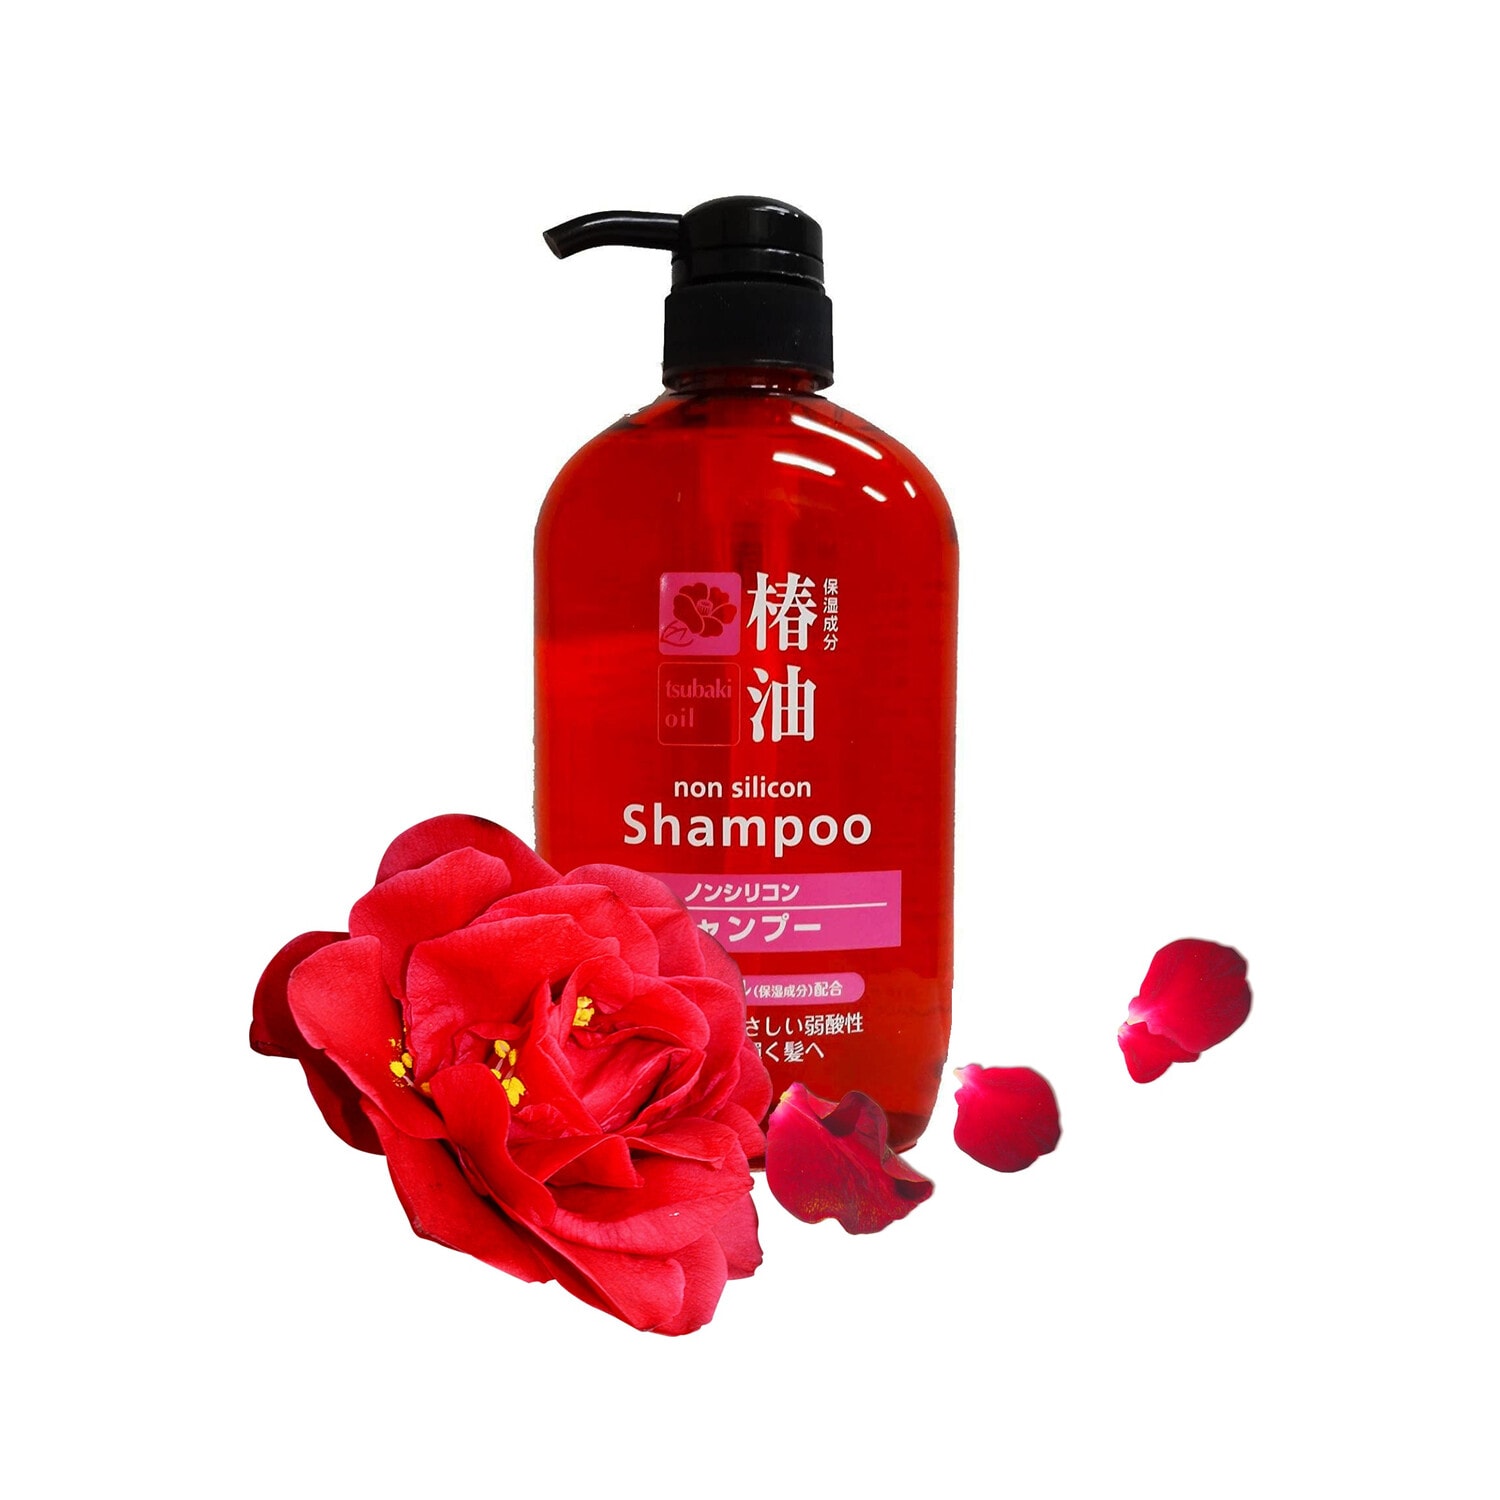 COSME Shampoo Tsubaki Oil Шампунь с натуральным маслом камелии для объема и блеска волос, 600 мл. / 830136